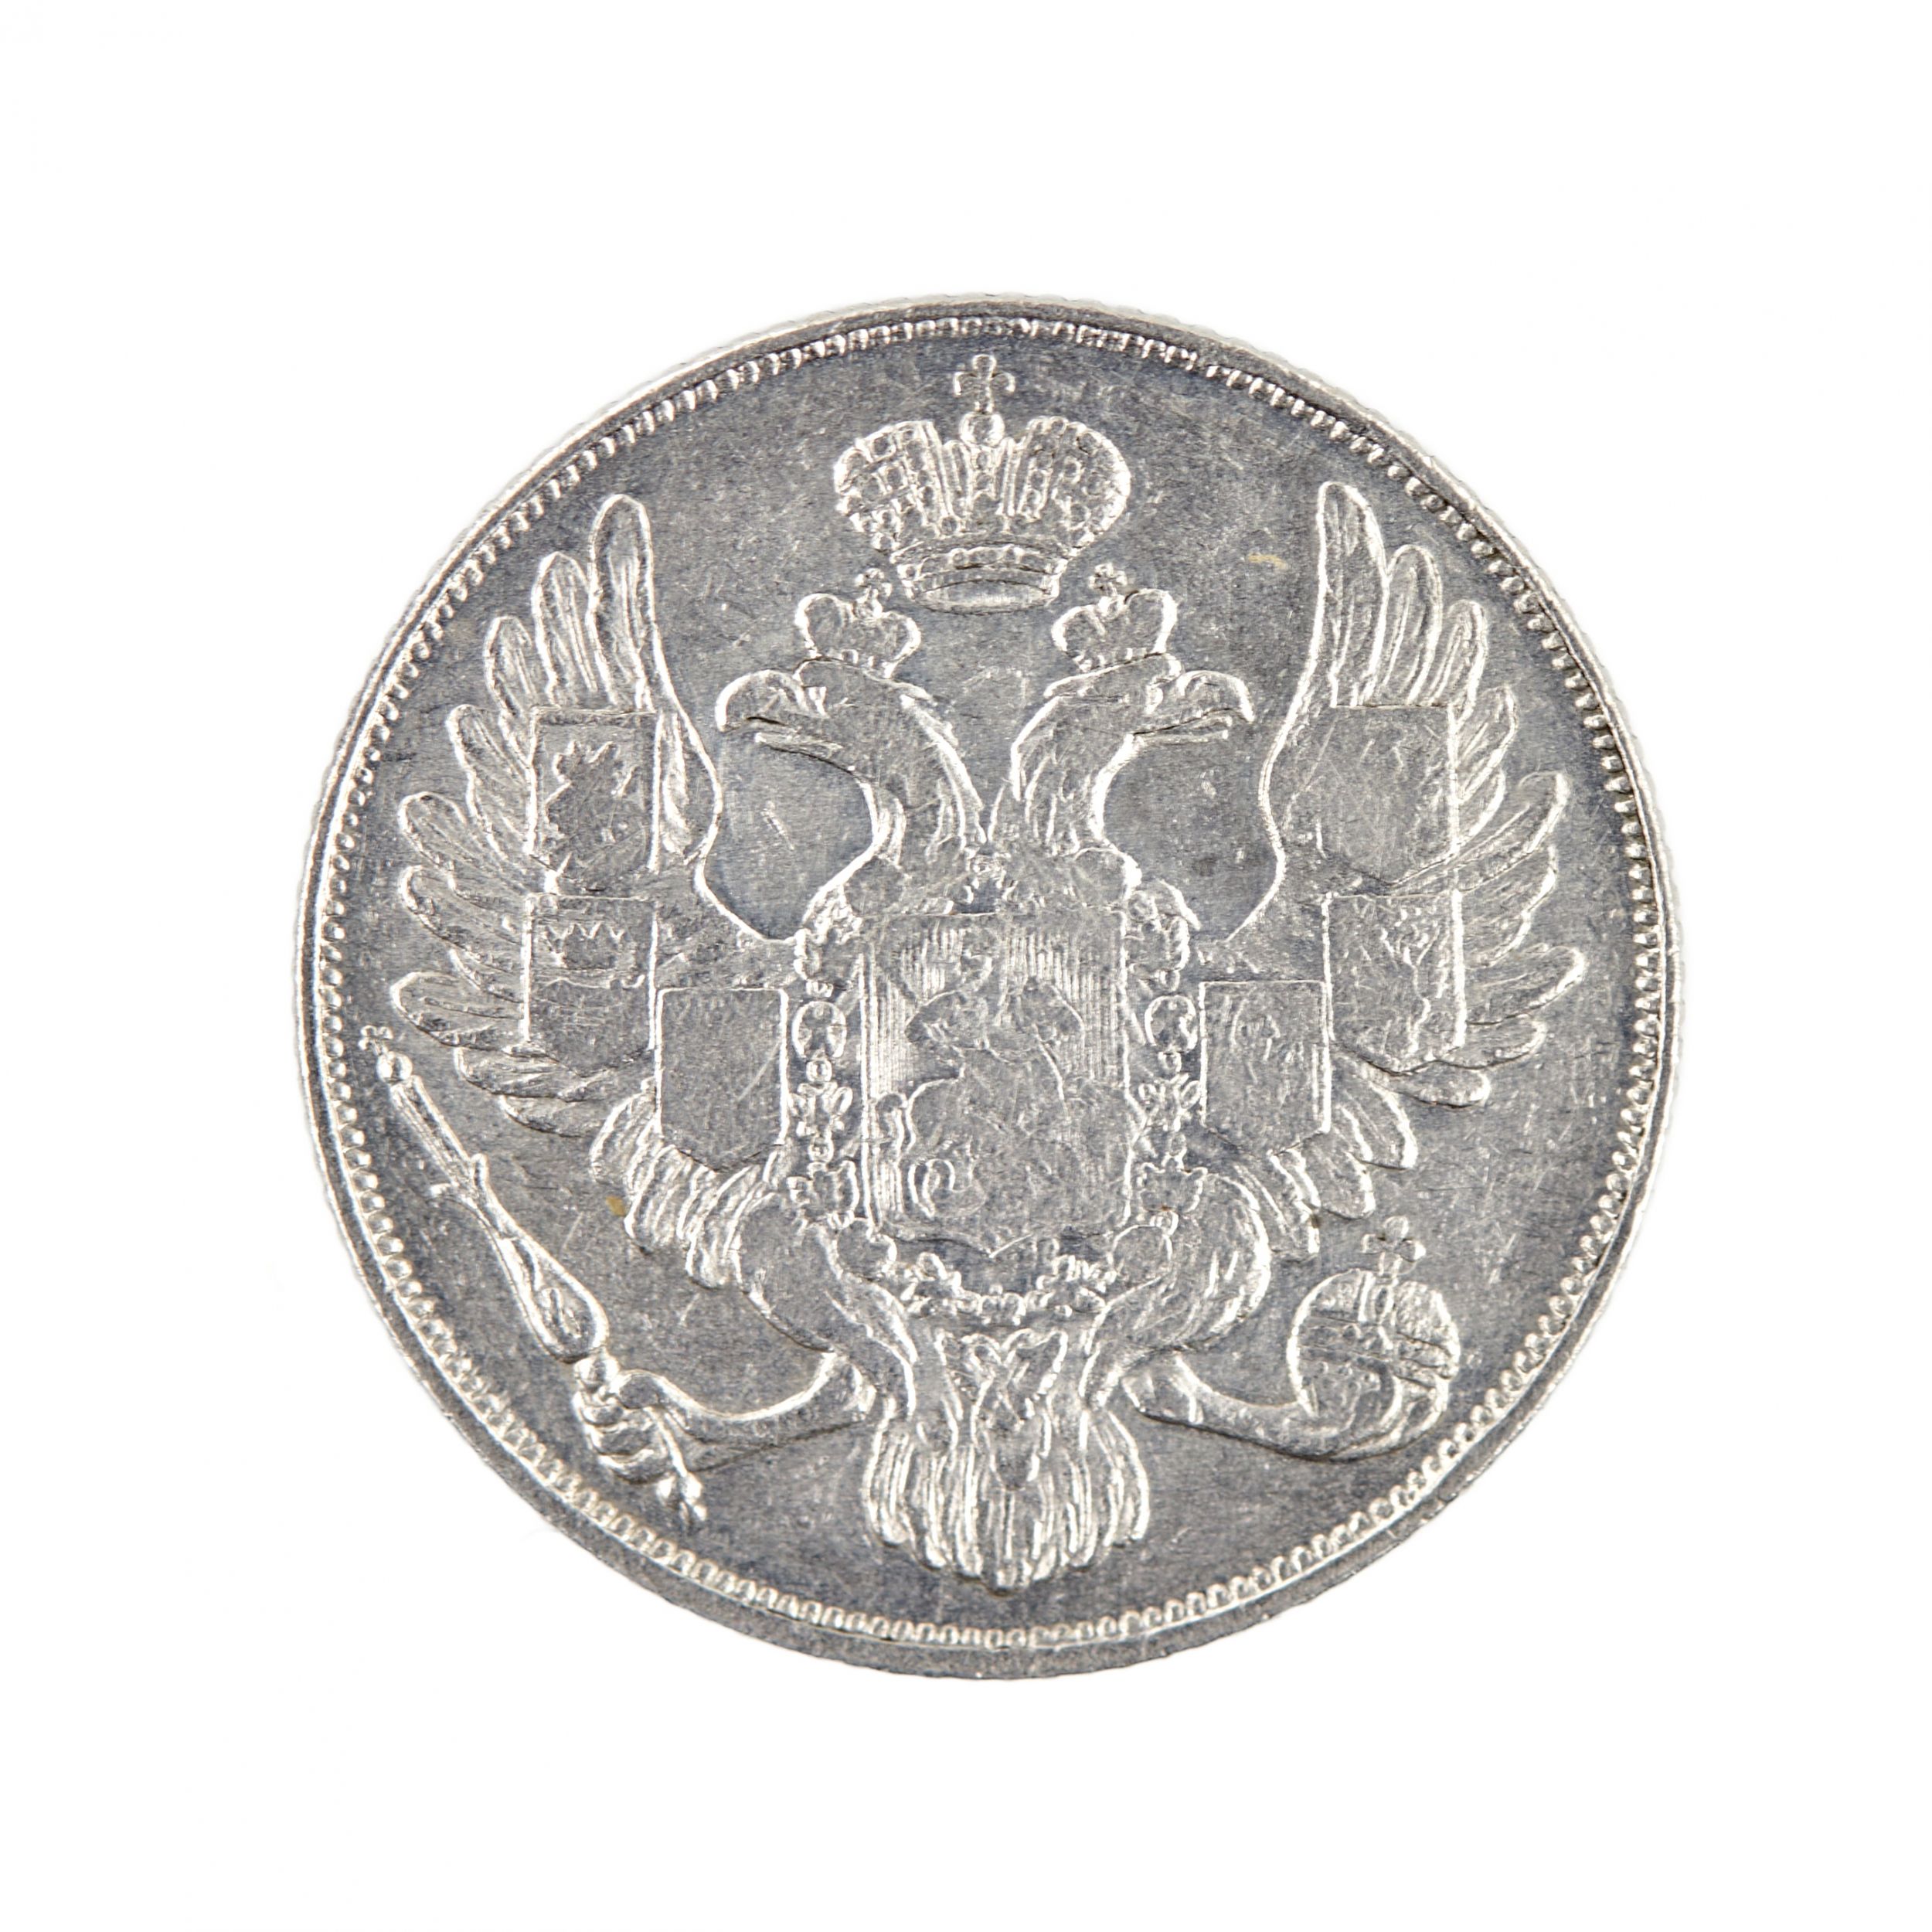 3 rubles in platinum Nicholas I, 1830. - Image 3 of 3